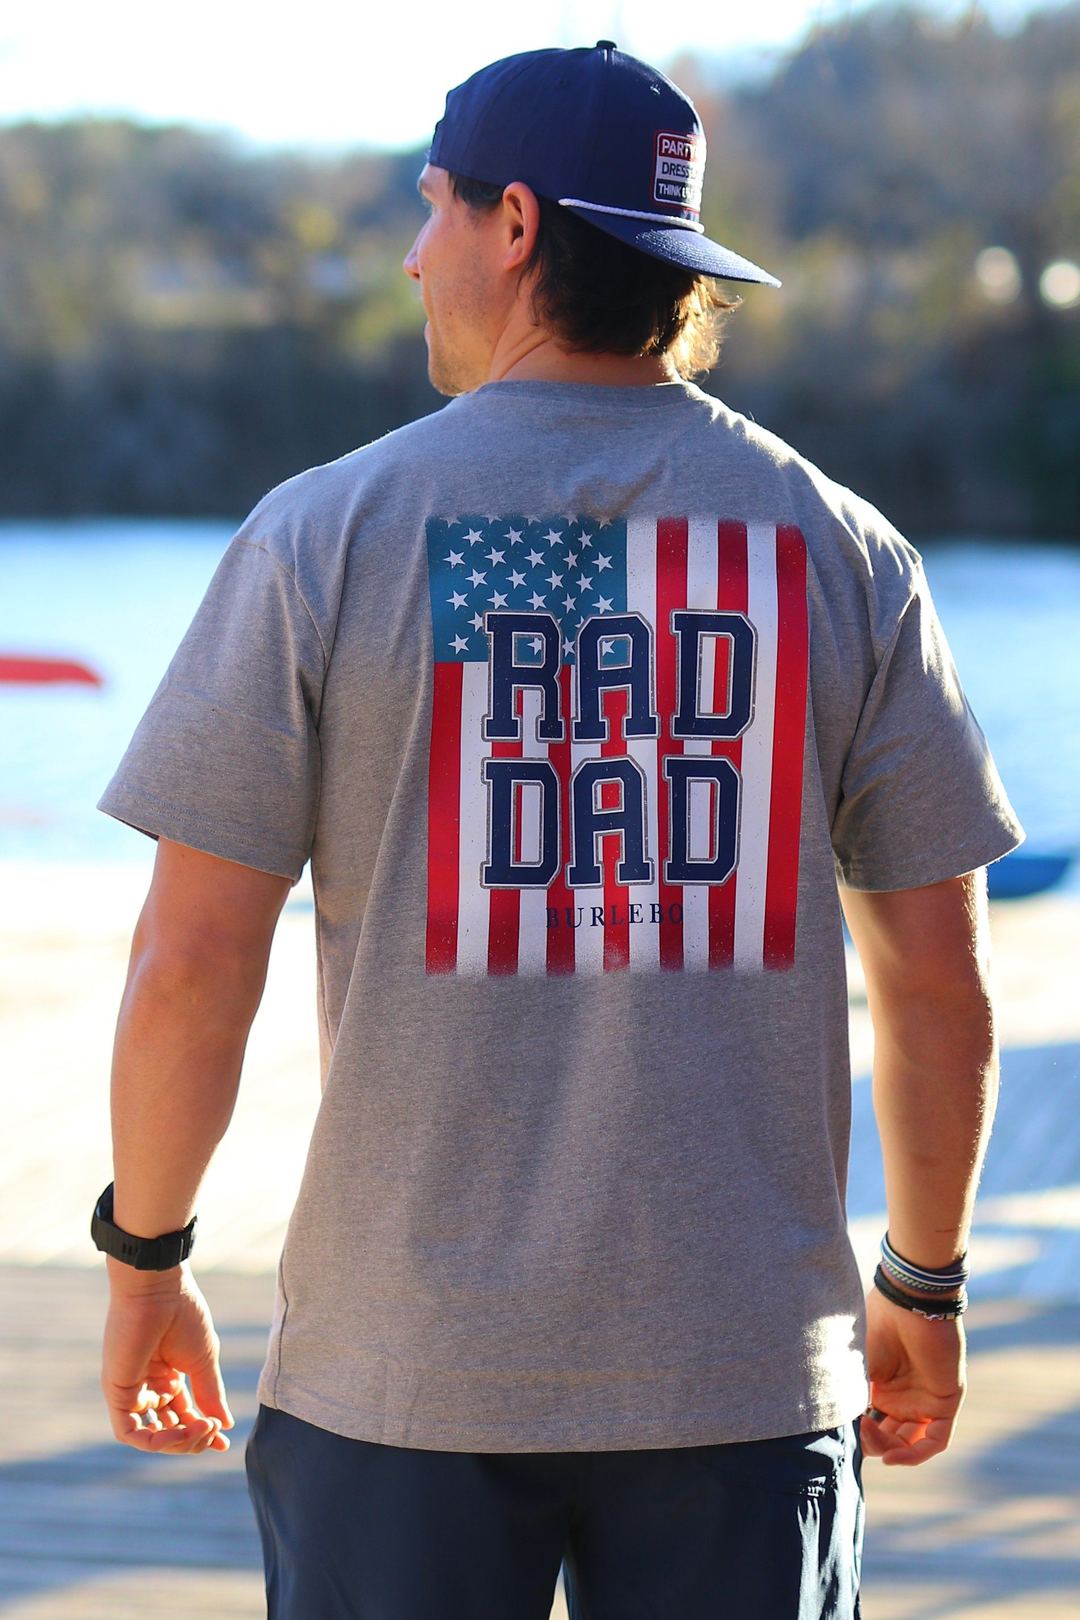 Burlebo T-Shirt - Rad Dad